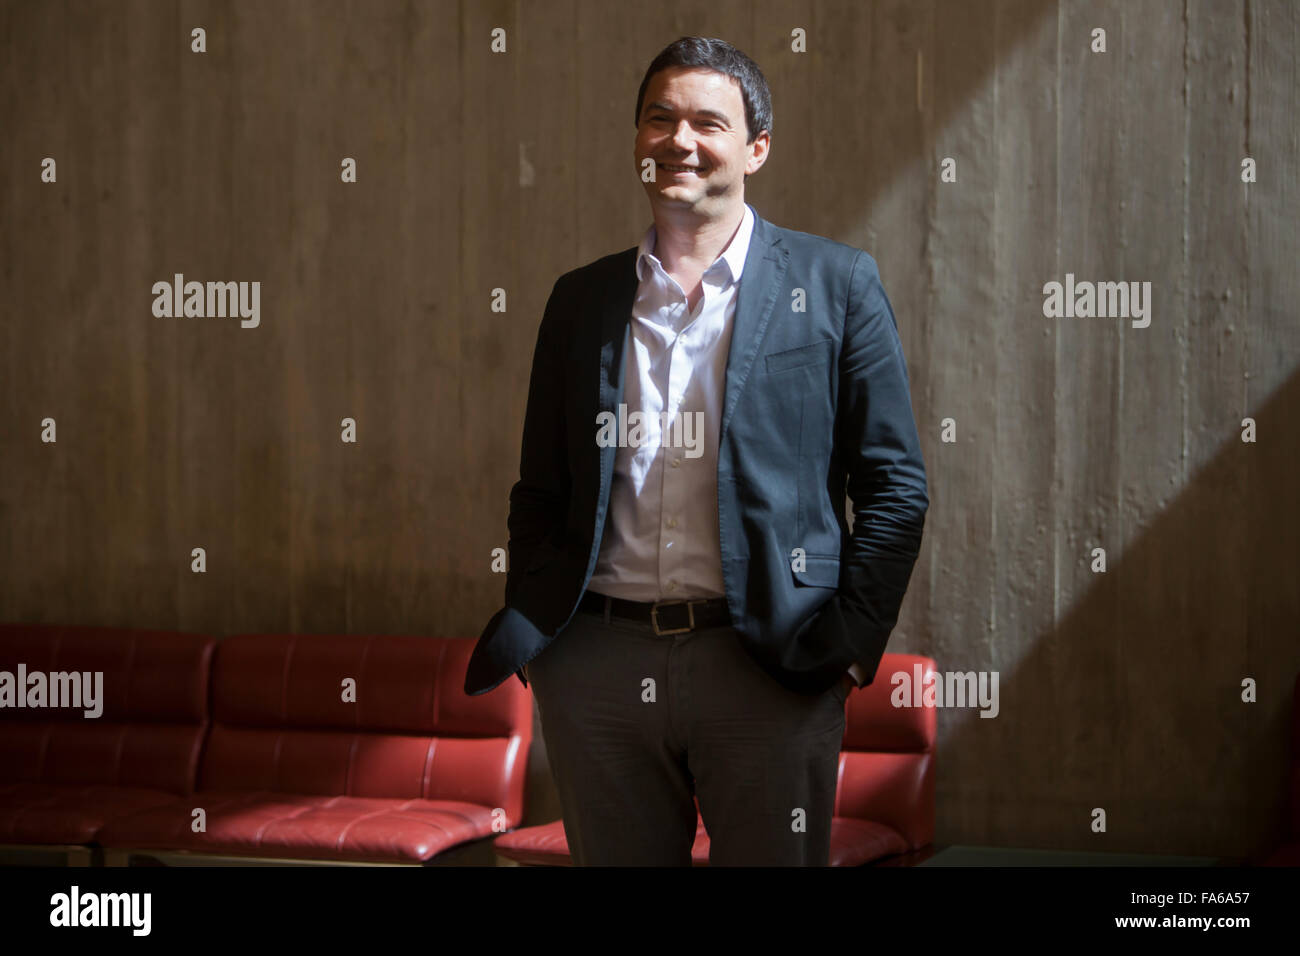 Thomas Piketty, economista francés que trabaja sobre la riqueza y la desigualdad en los ingresos, en una visita a Portugal. Foto de stock